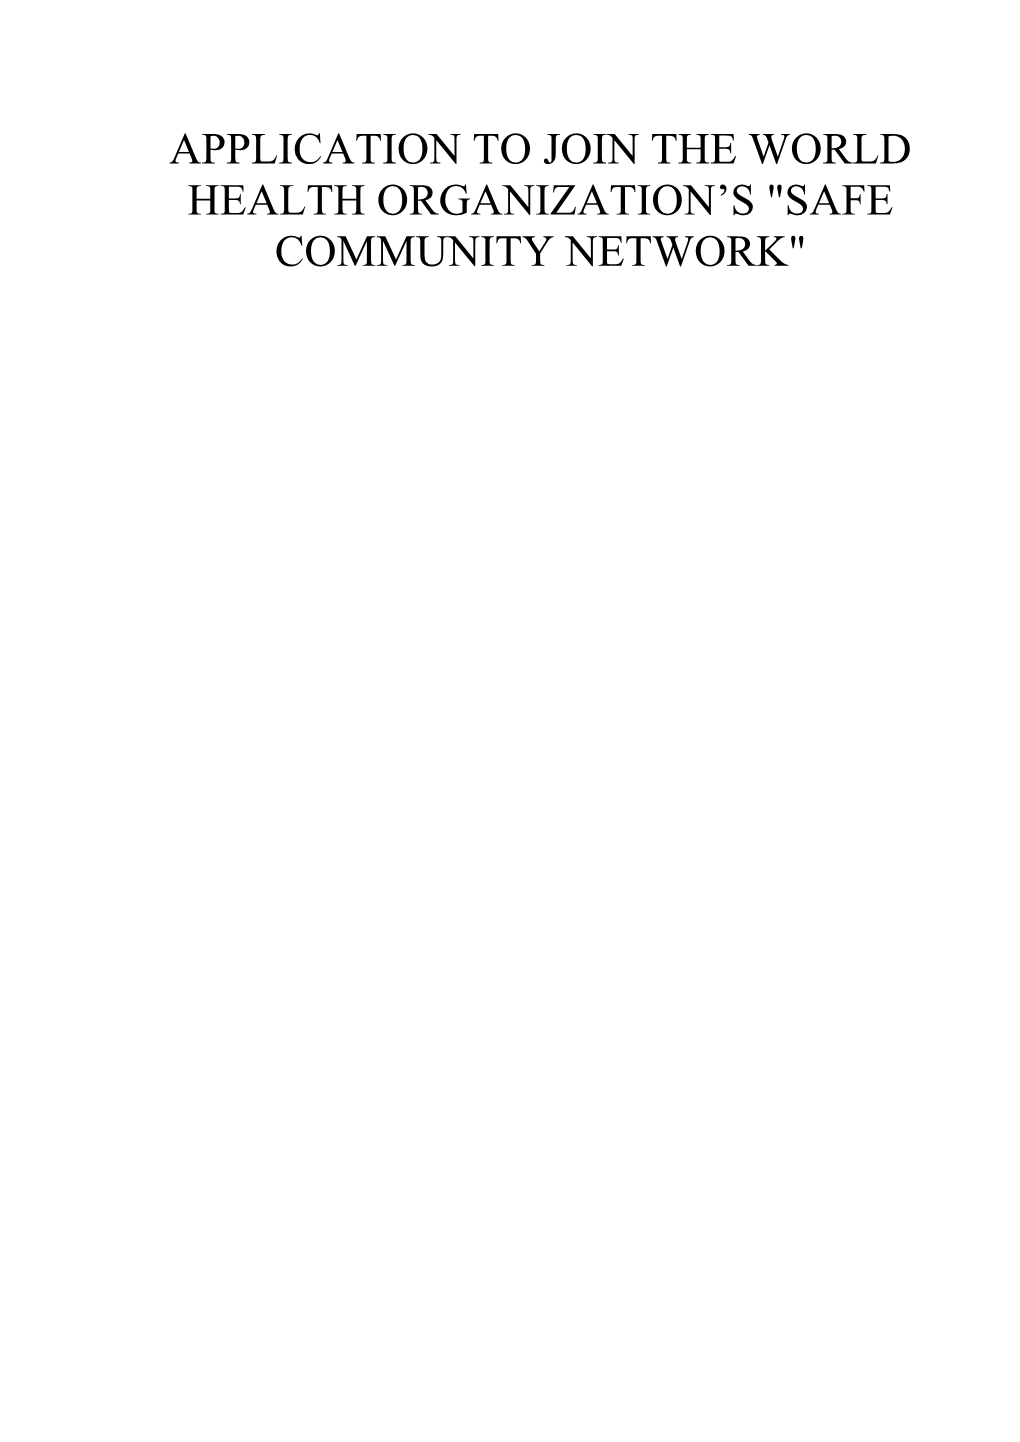 Safe Community Networks